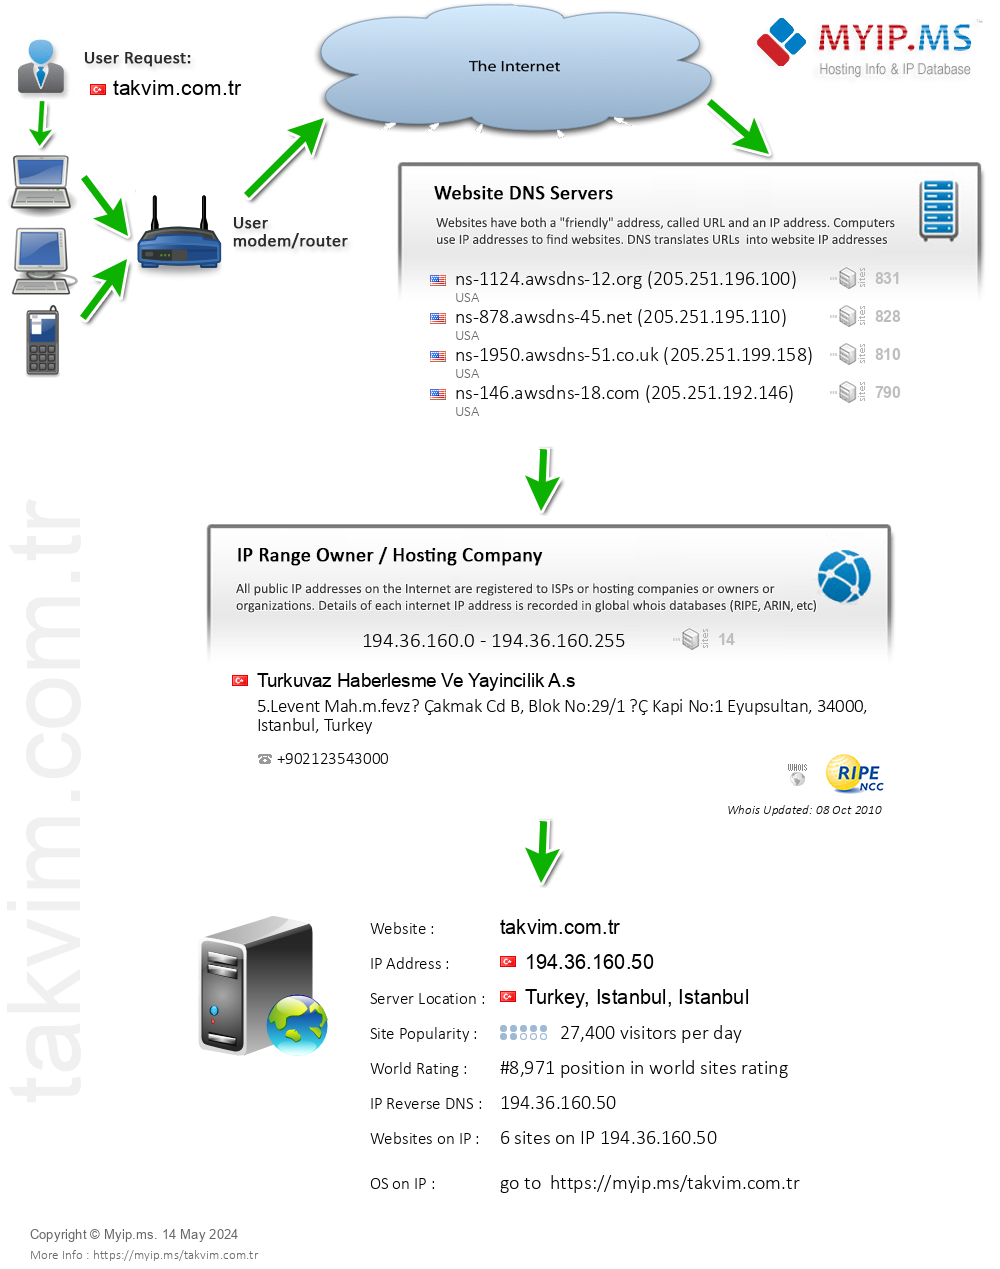 Takvim.com.tr - Website Hosting Visual IP Diagram